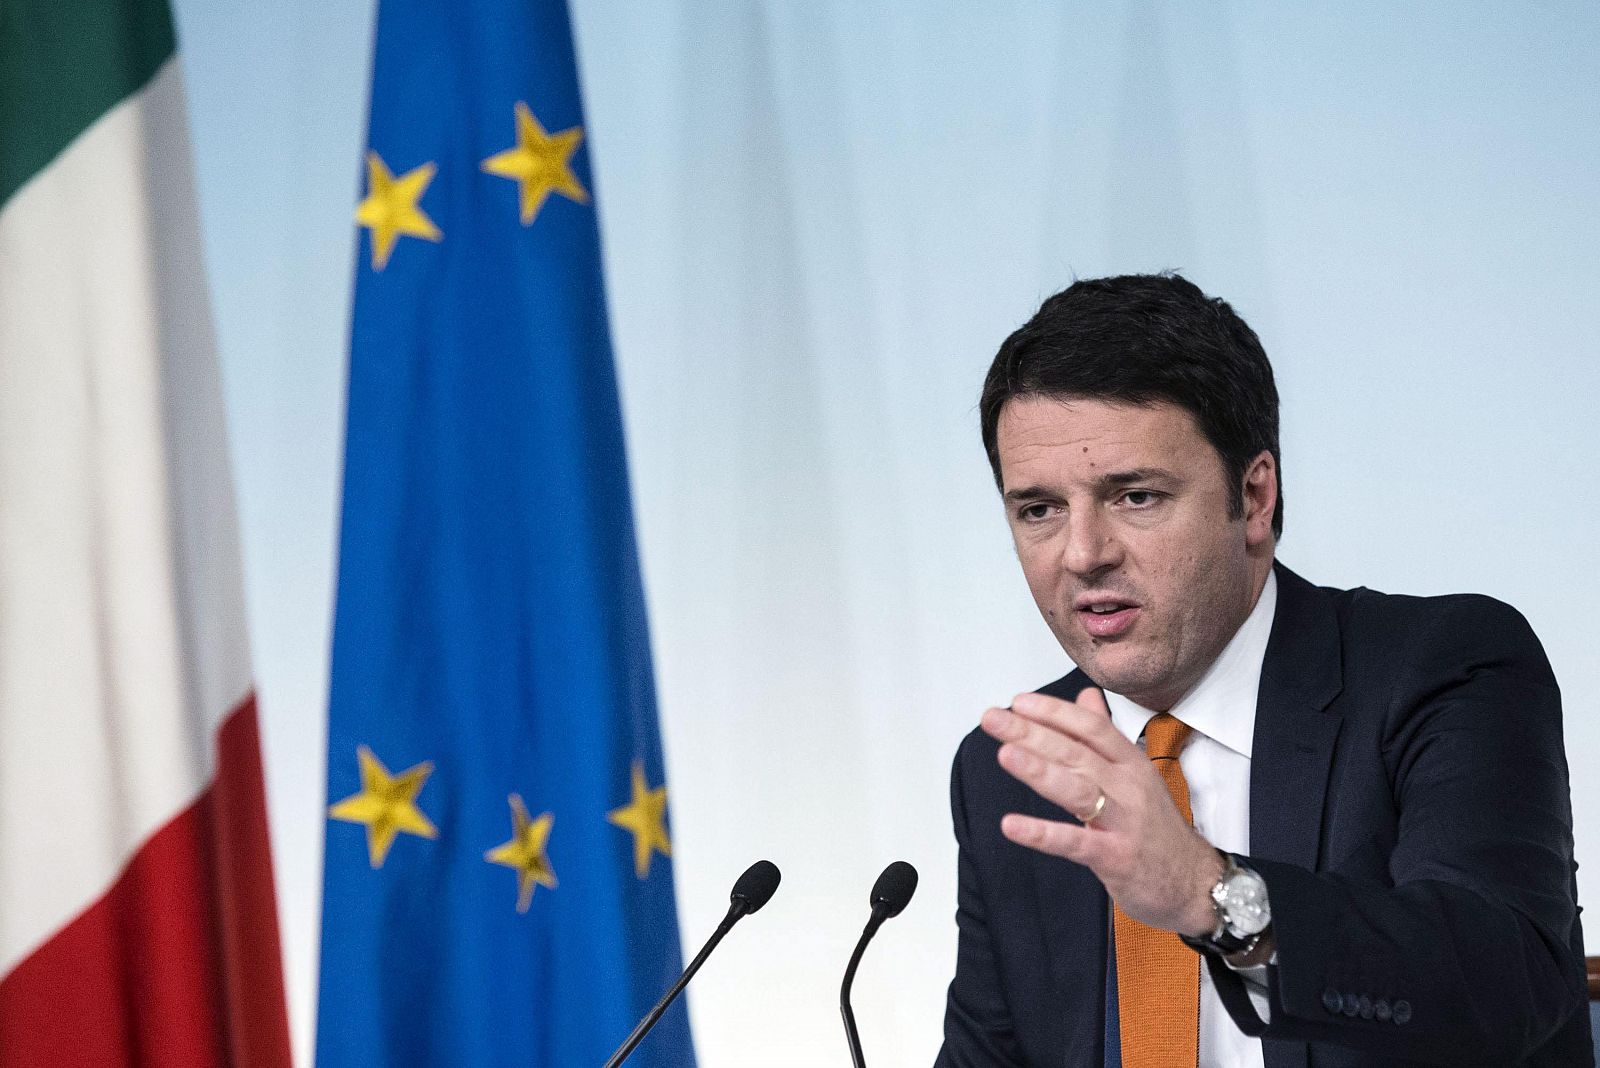 El primer ministro italiano Matteo Renzi durante la rueda de prensa tras el Consejo de Ministros del 24 de diciembre de 2014